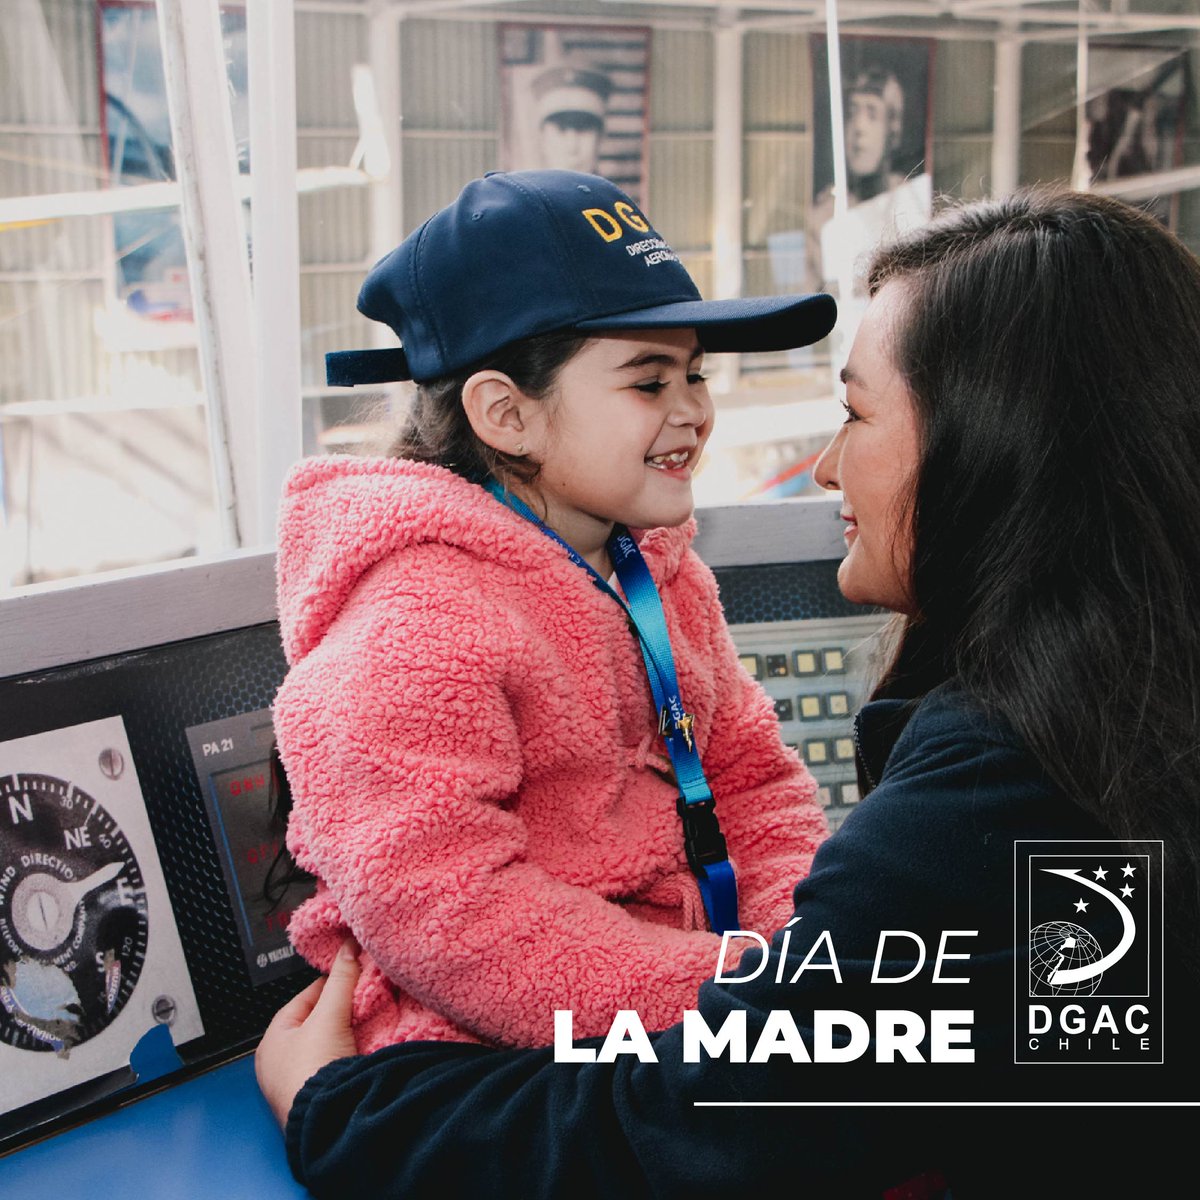 #InfoDGAC En el #DíadelaMadre, la @DGACChile envía un afectuoso saludo a todas las Mamás Aeronáuticas que trabajan día a día en la Red Aeroportuaria Nacional @meteochile_dmc @Esc_Aeronautica #MuseoAeronáutico Muchas felicidades !!